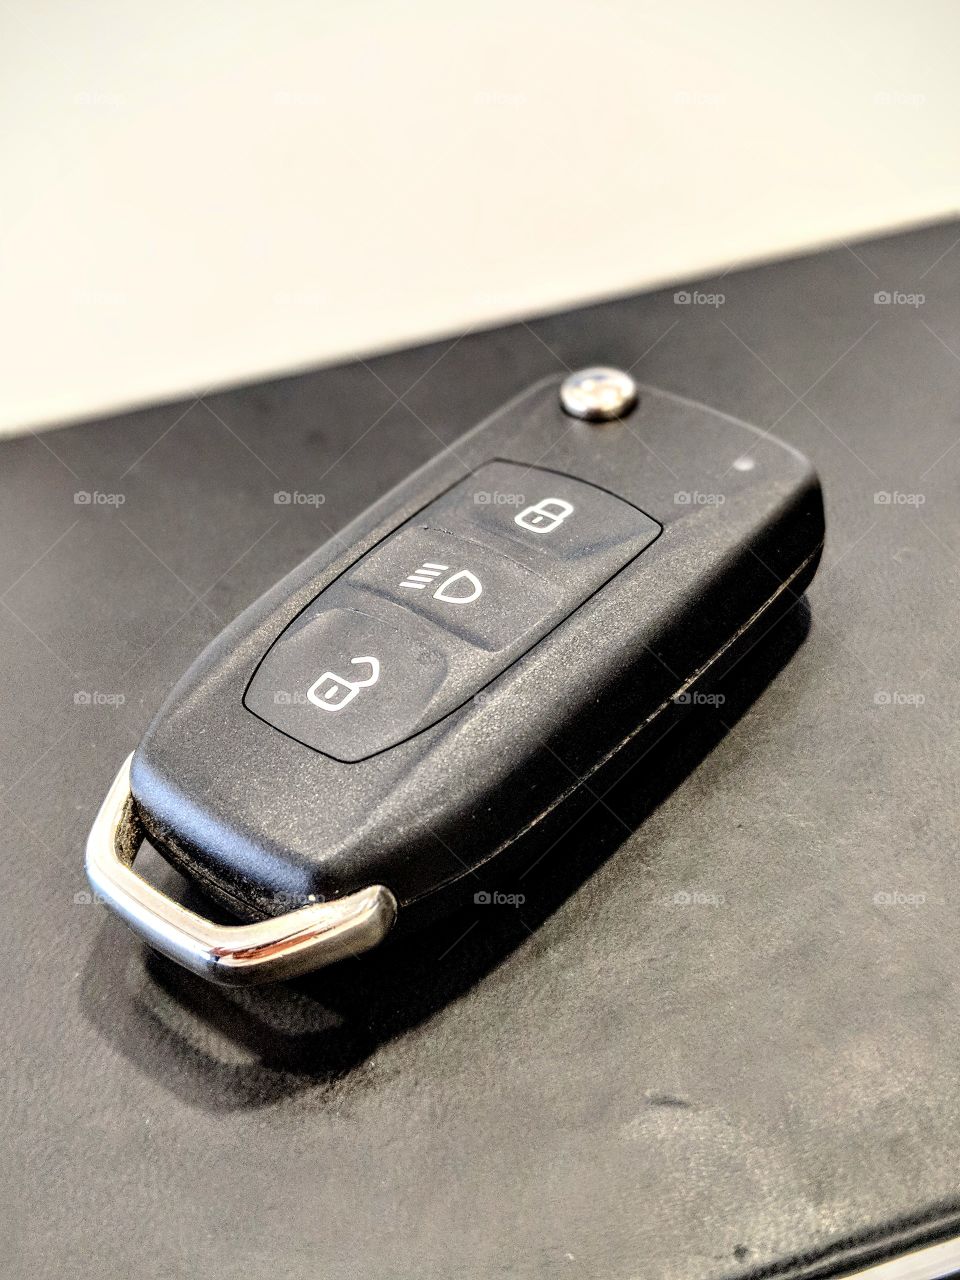 foldable remote control car keys